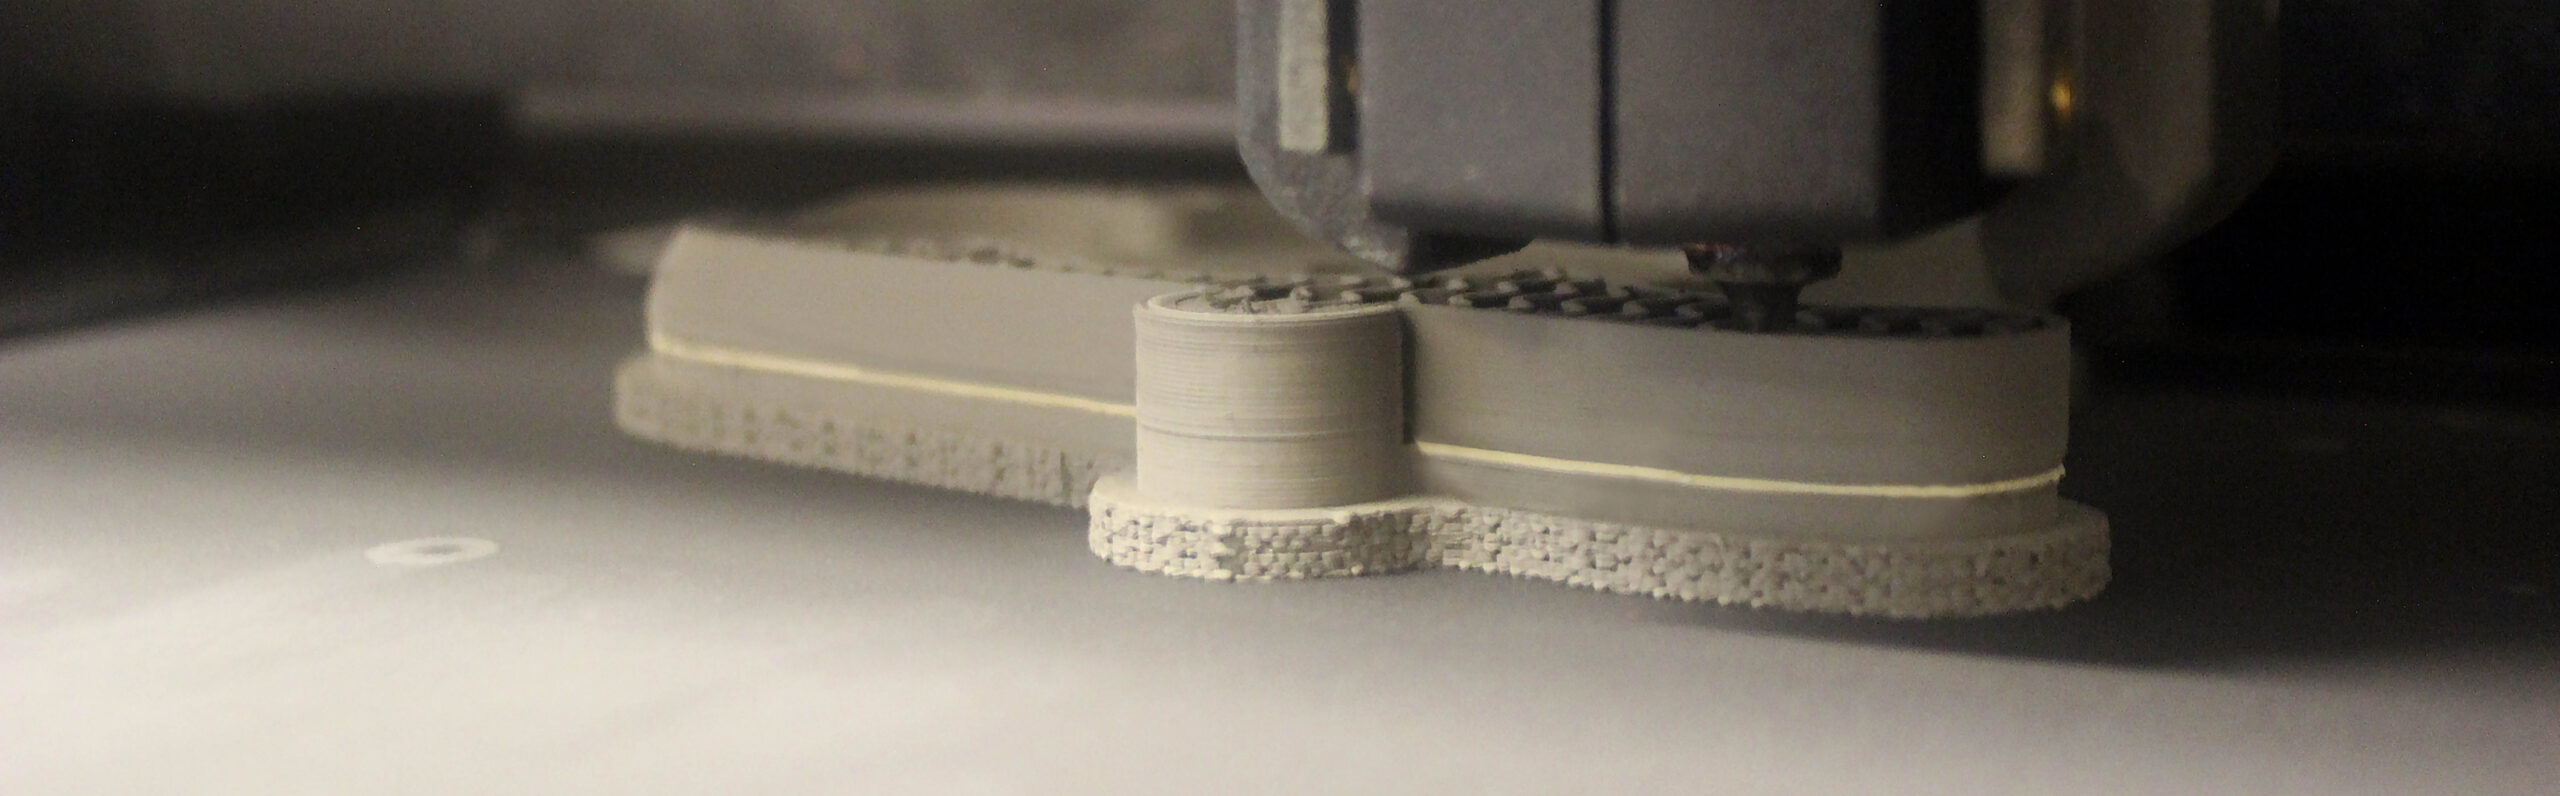 Desktop Metal Studio System 3D metal printer for additive manufacturing